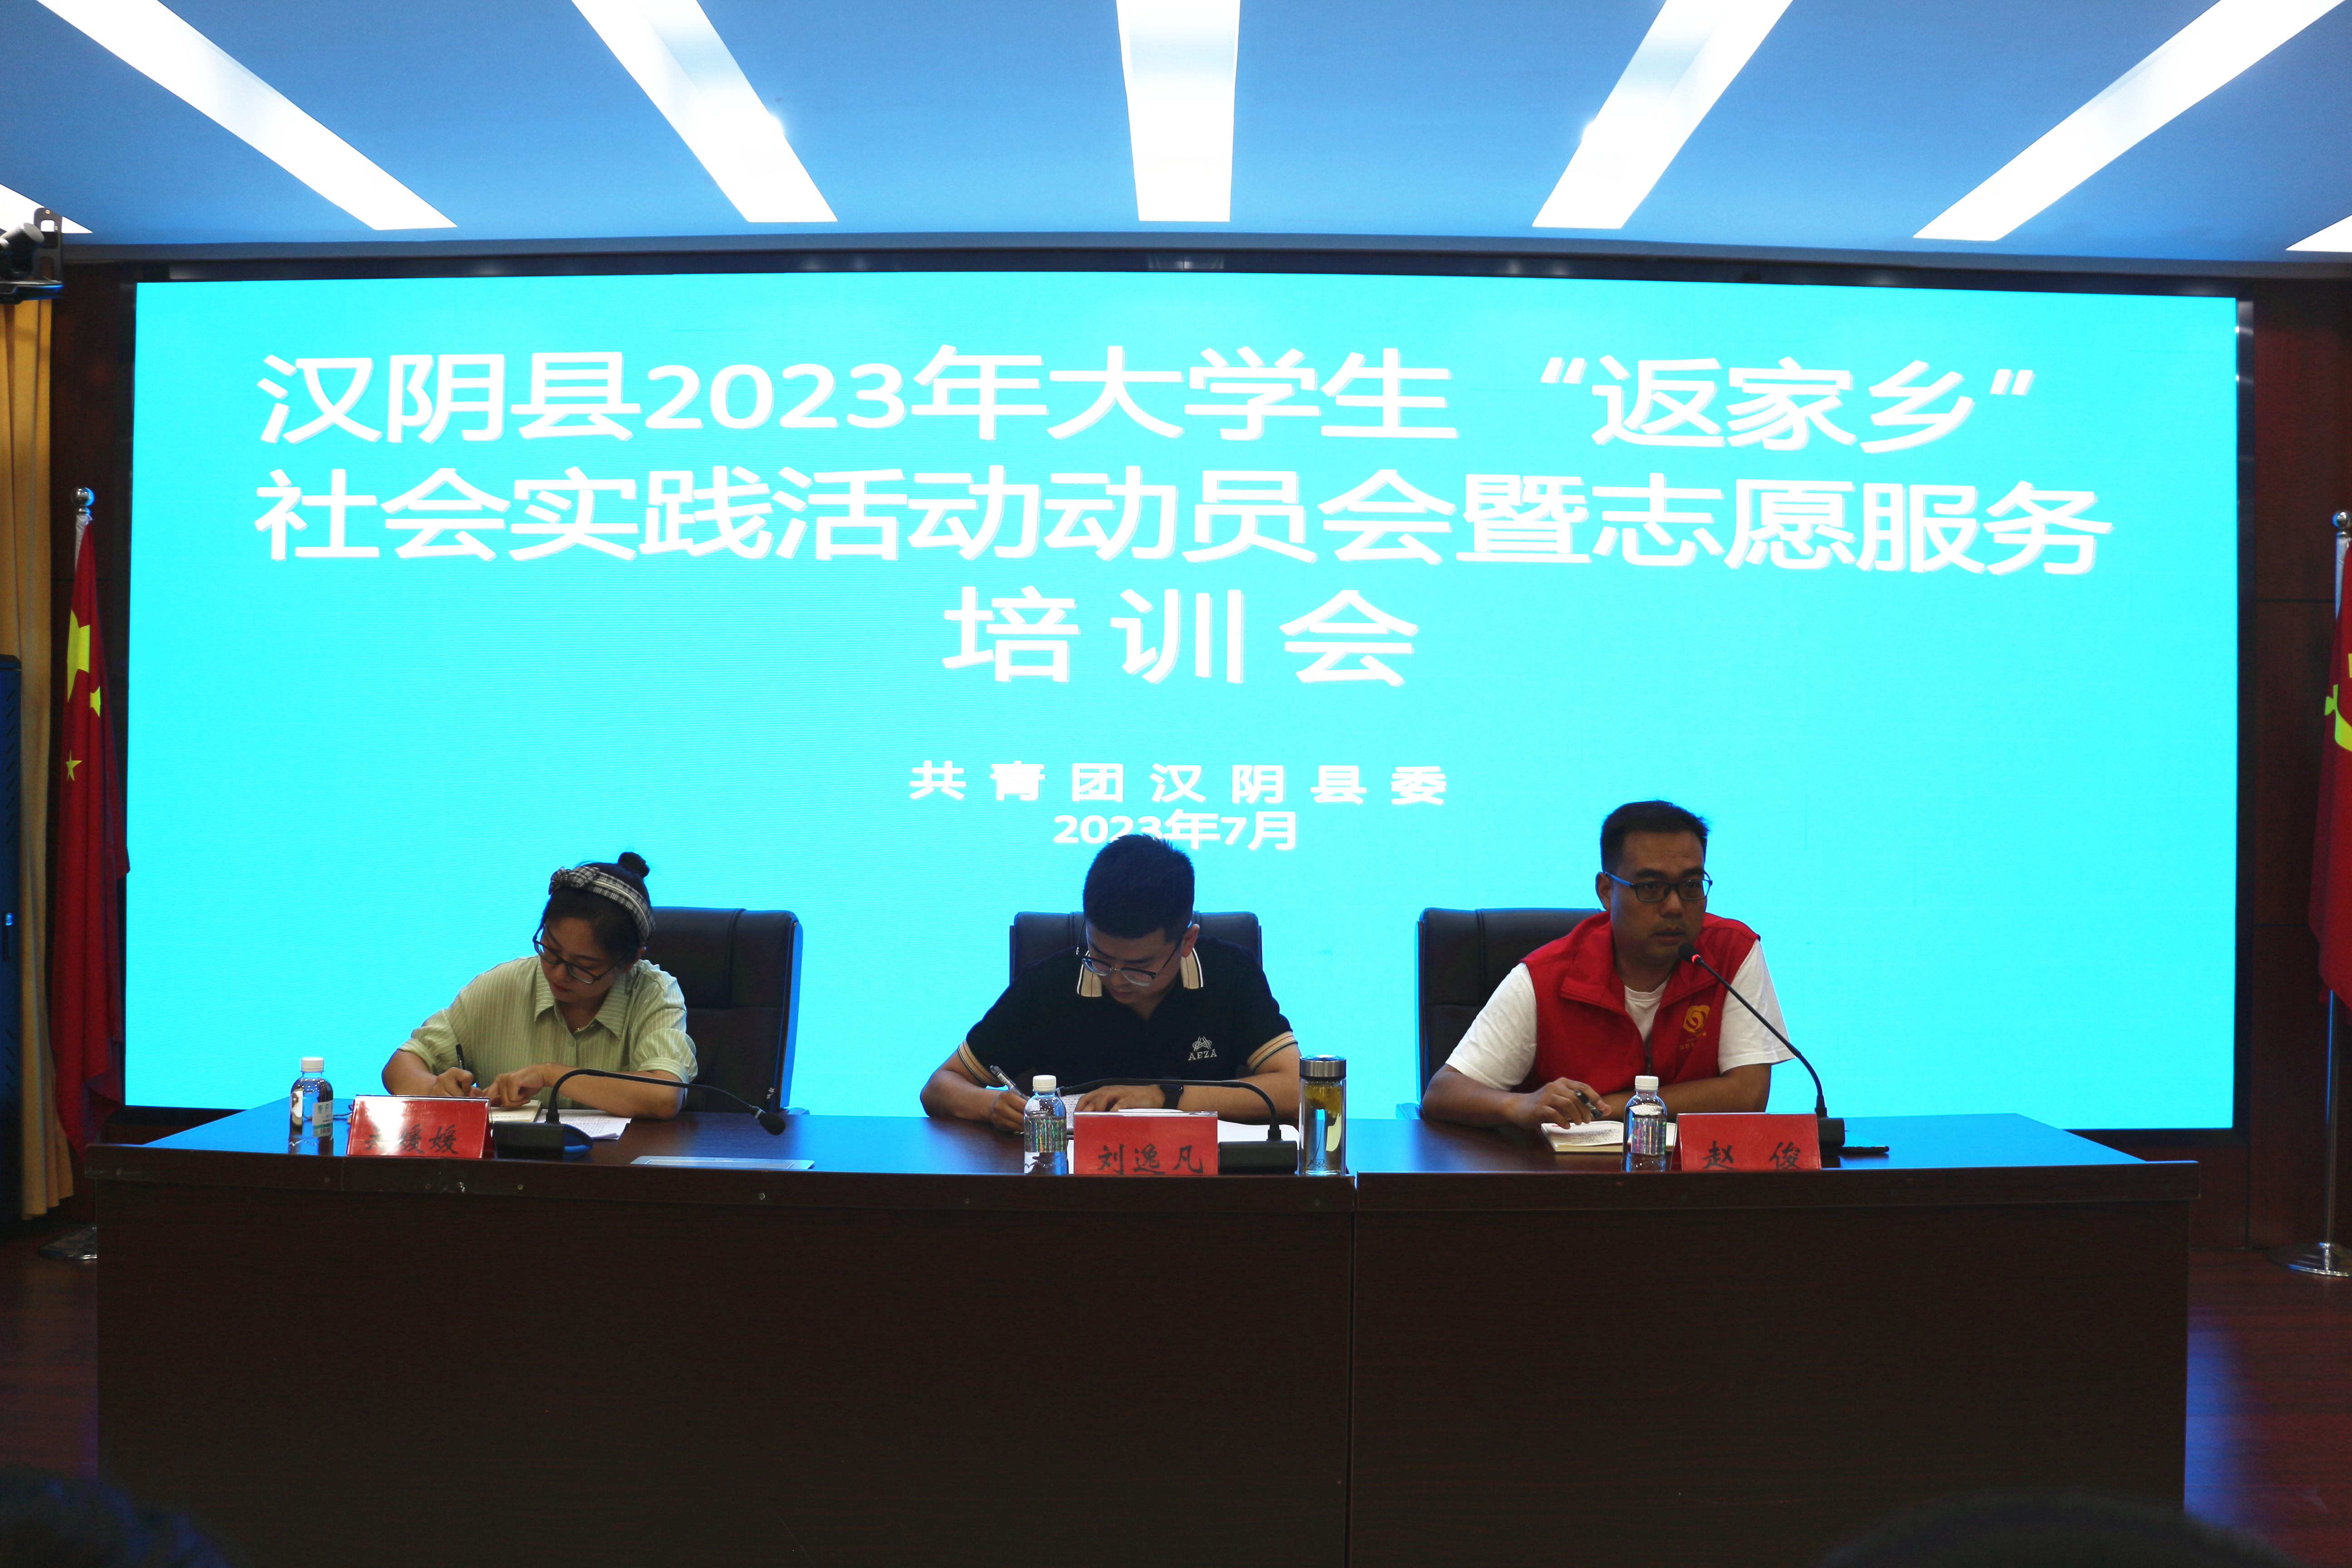 汉阴县召开2023年度大学生“返家乡”社会实践活动动员会暨志愿服务培训会